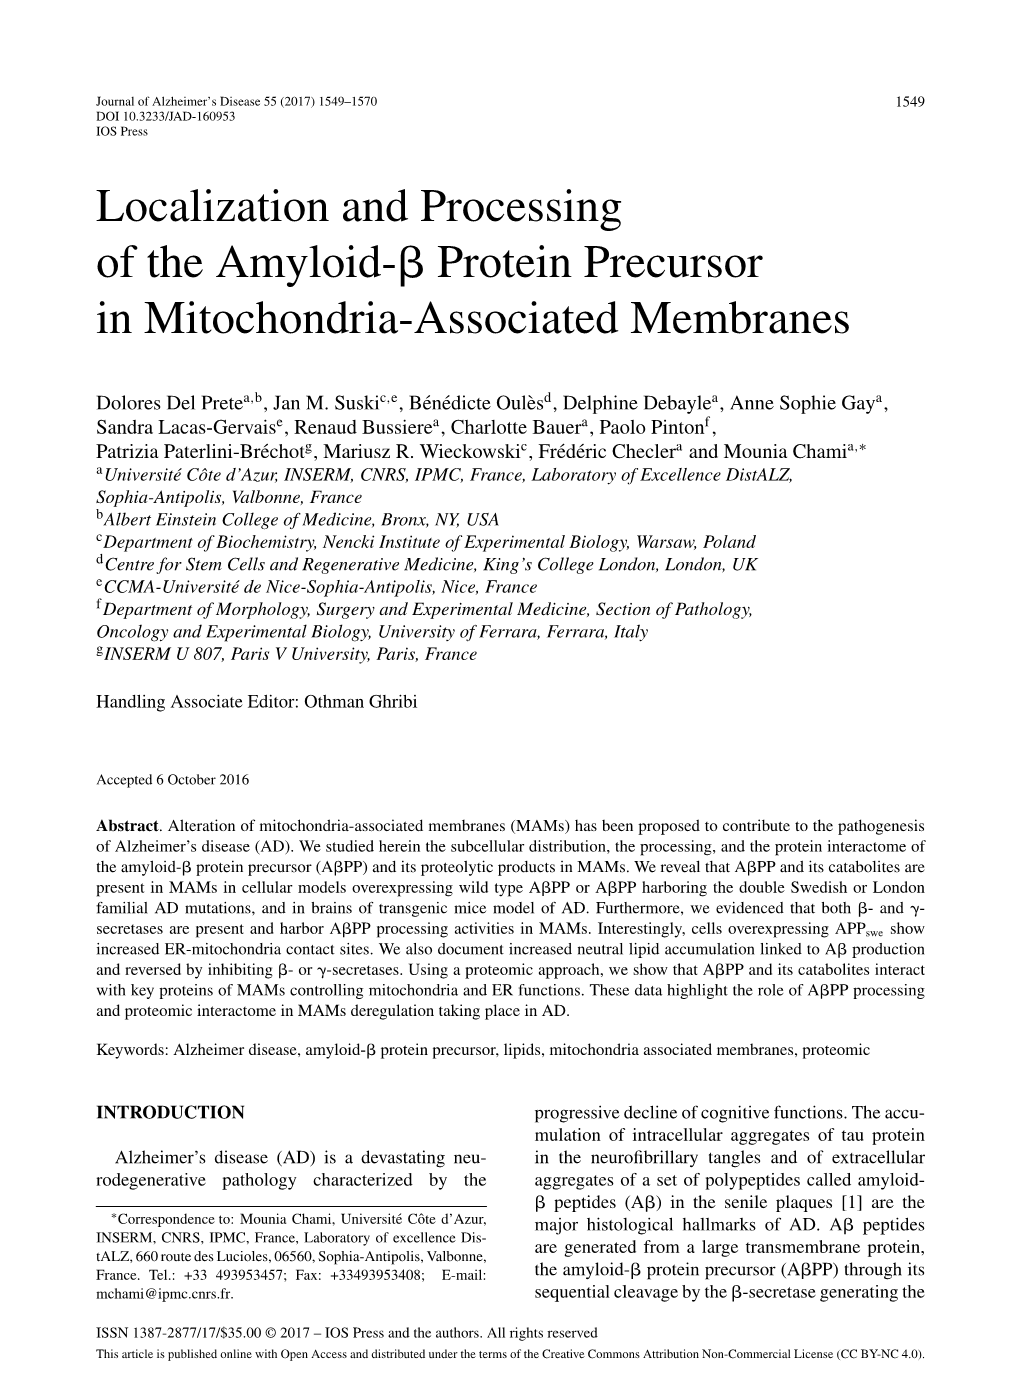 Protein Precursor in Mitochondria-Associated Membranes